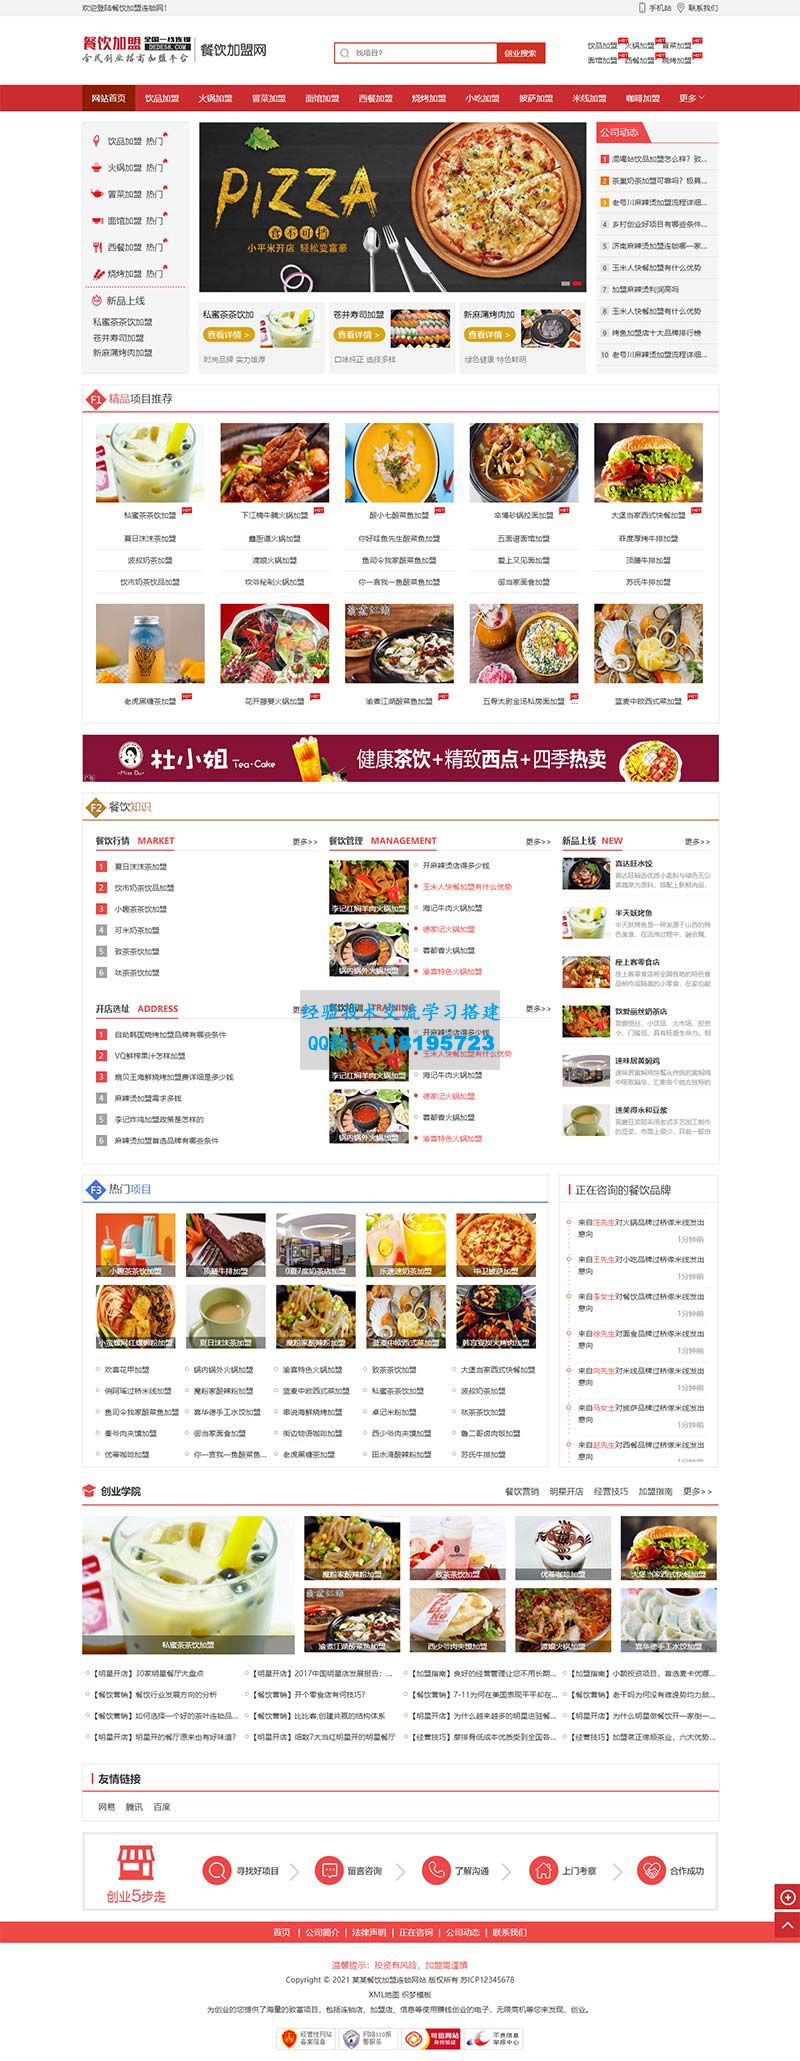     美食小吃加盟网站源码 餐饮奶茶招商加盟类网站pbootcms模板
